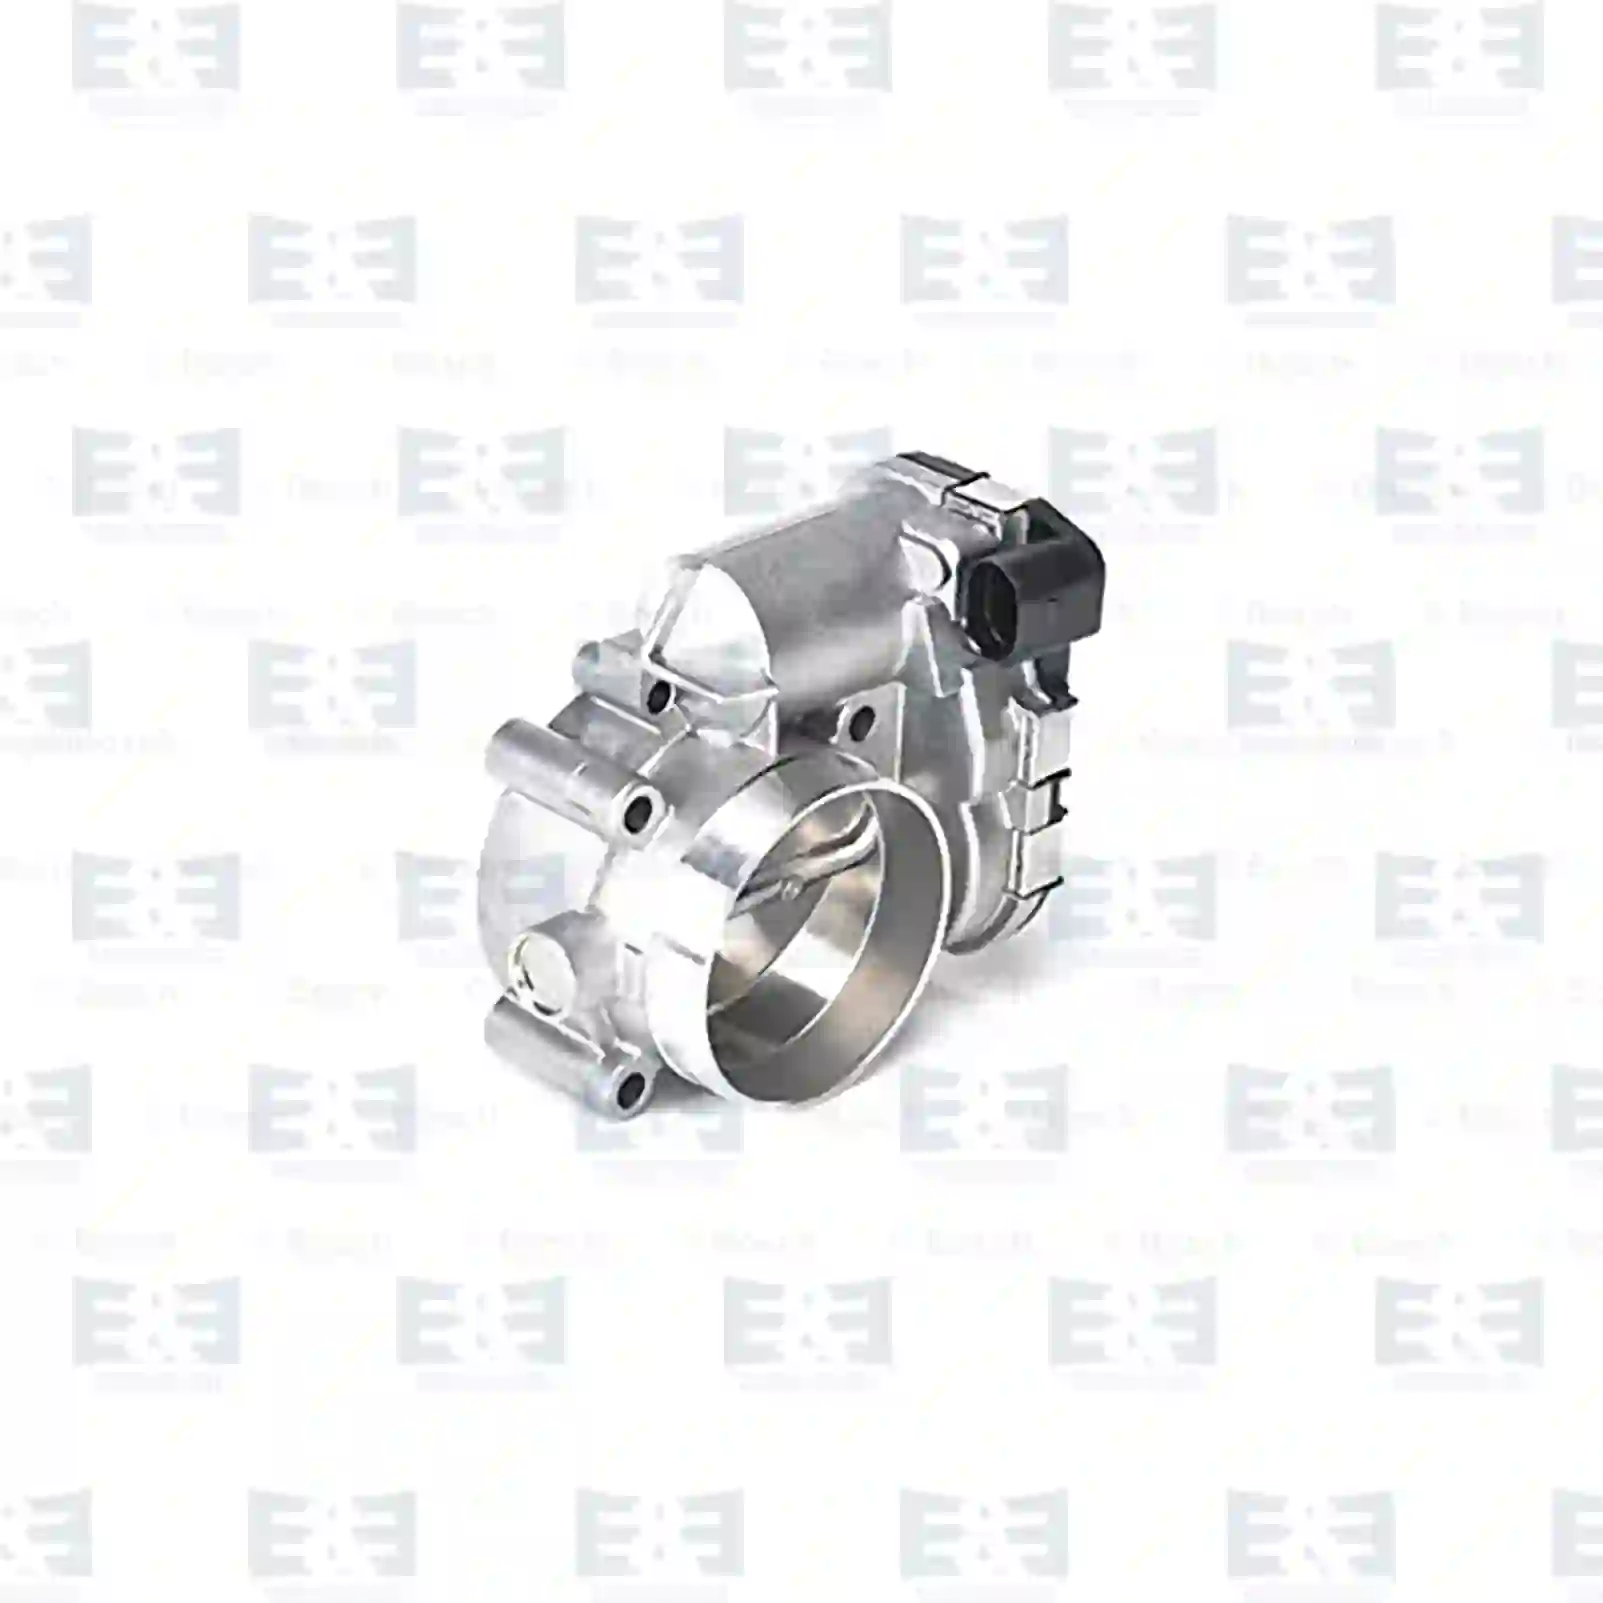  Throttle, complete || E&E Truck Spare Parts | Truck Spare Parts, Auotomotive Spare Parts